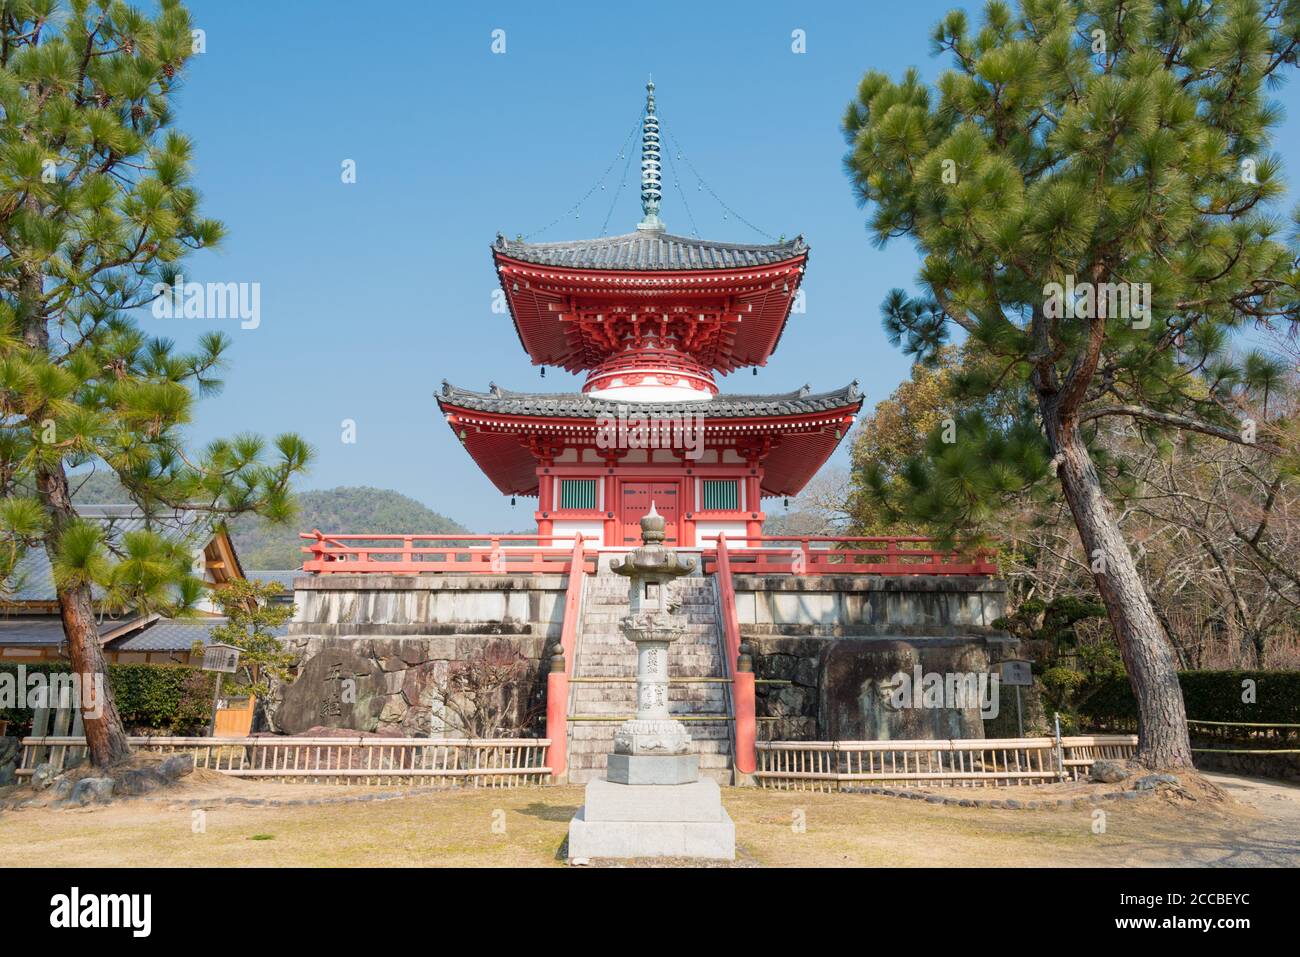 Kyoto, Japan - Pagode am Daikaku-ji Tempel in Kyoto, Japan. Der Ort war ursprünglich eine Residenz von Kaiser Saga (786-842). Stockfoto